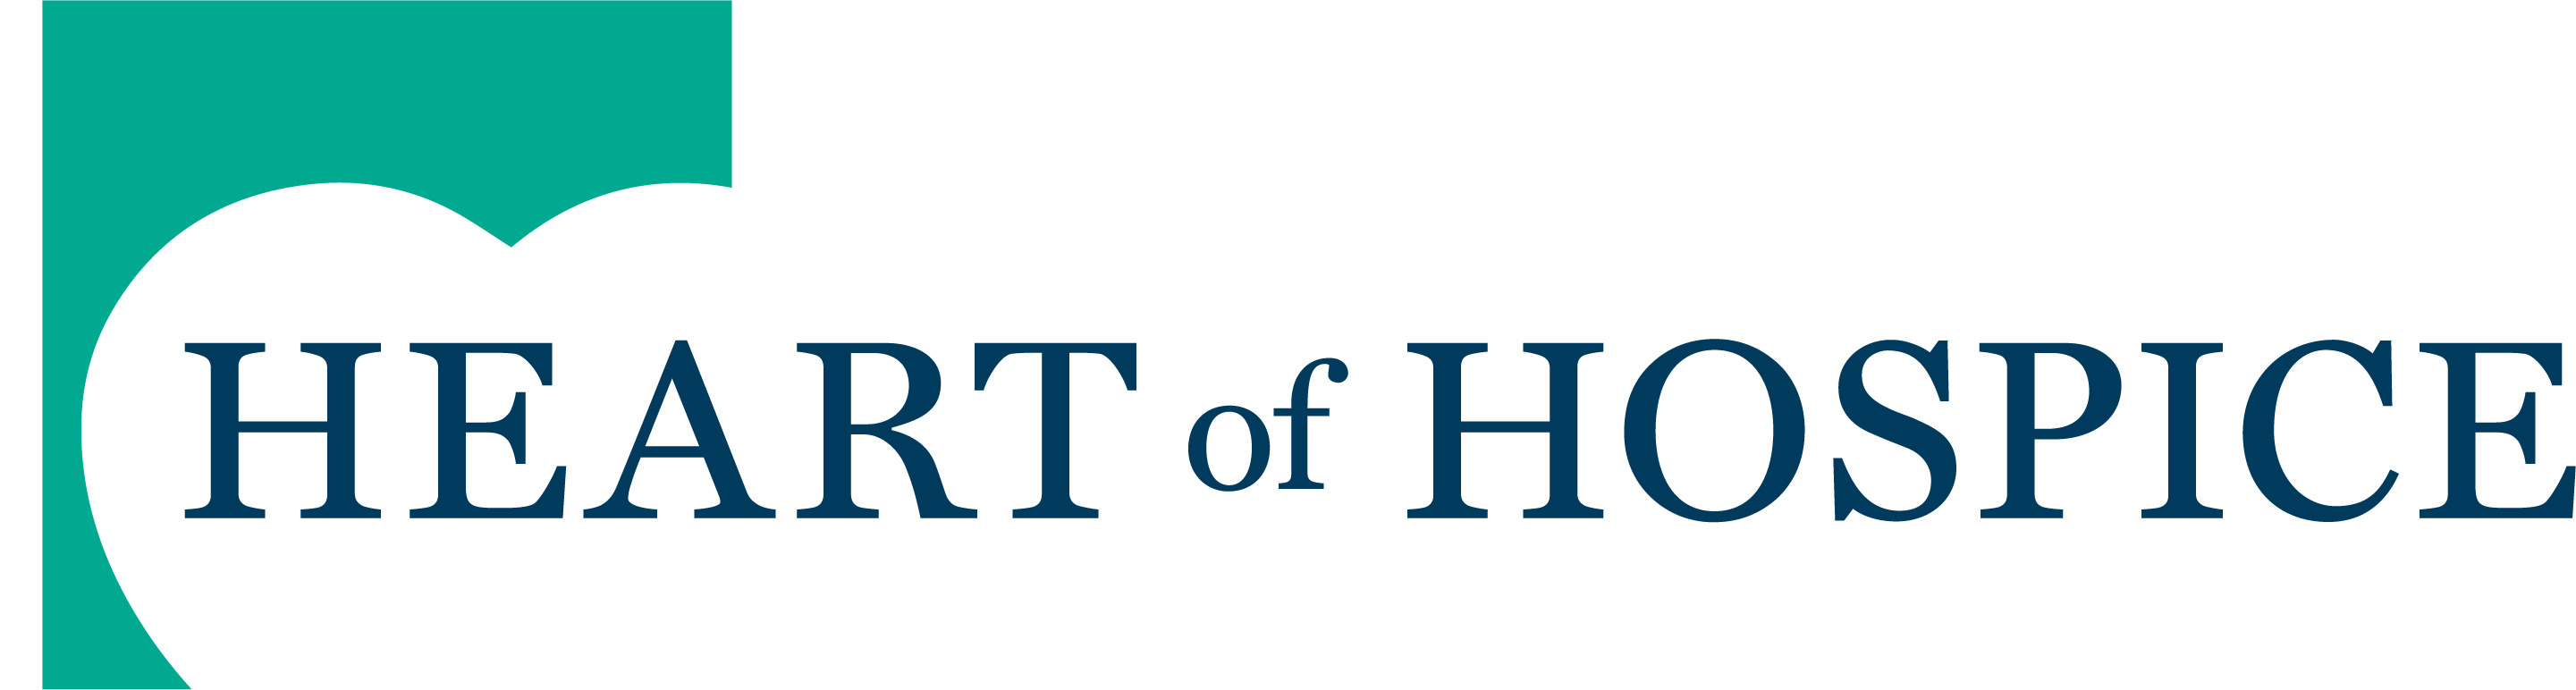 Heart of Hospice Logo